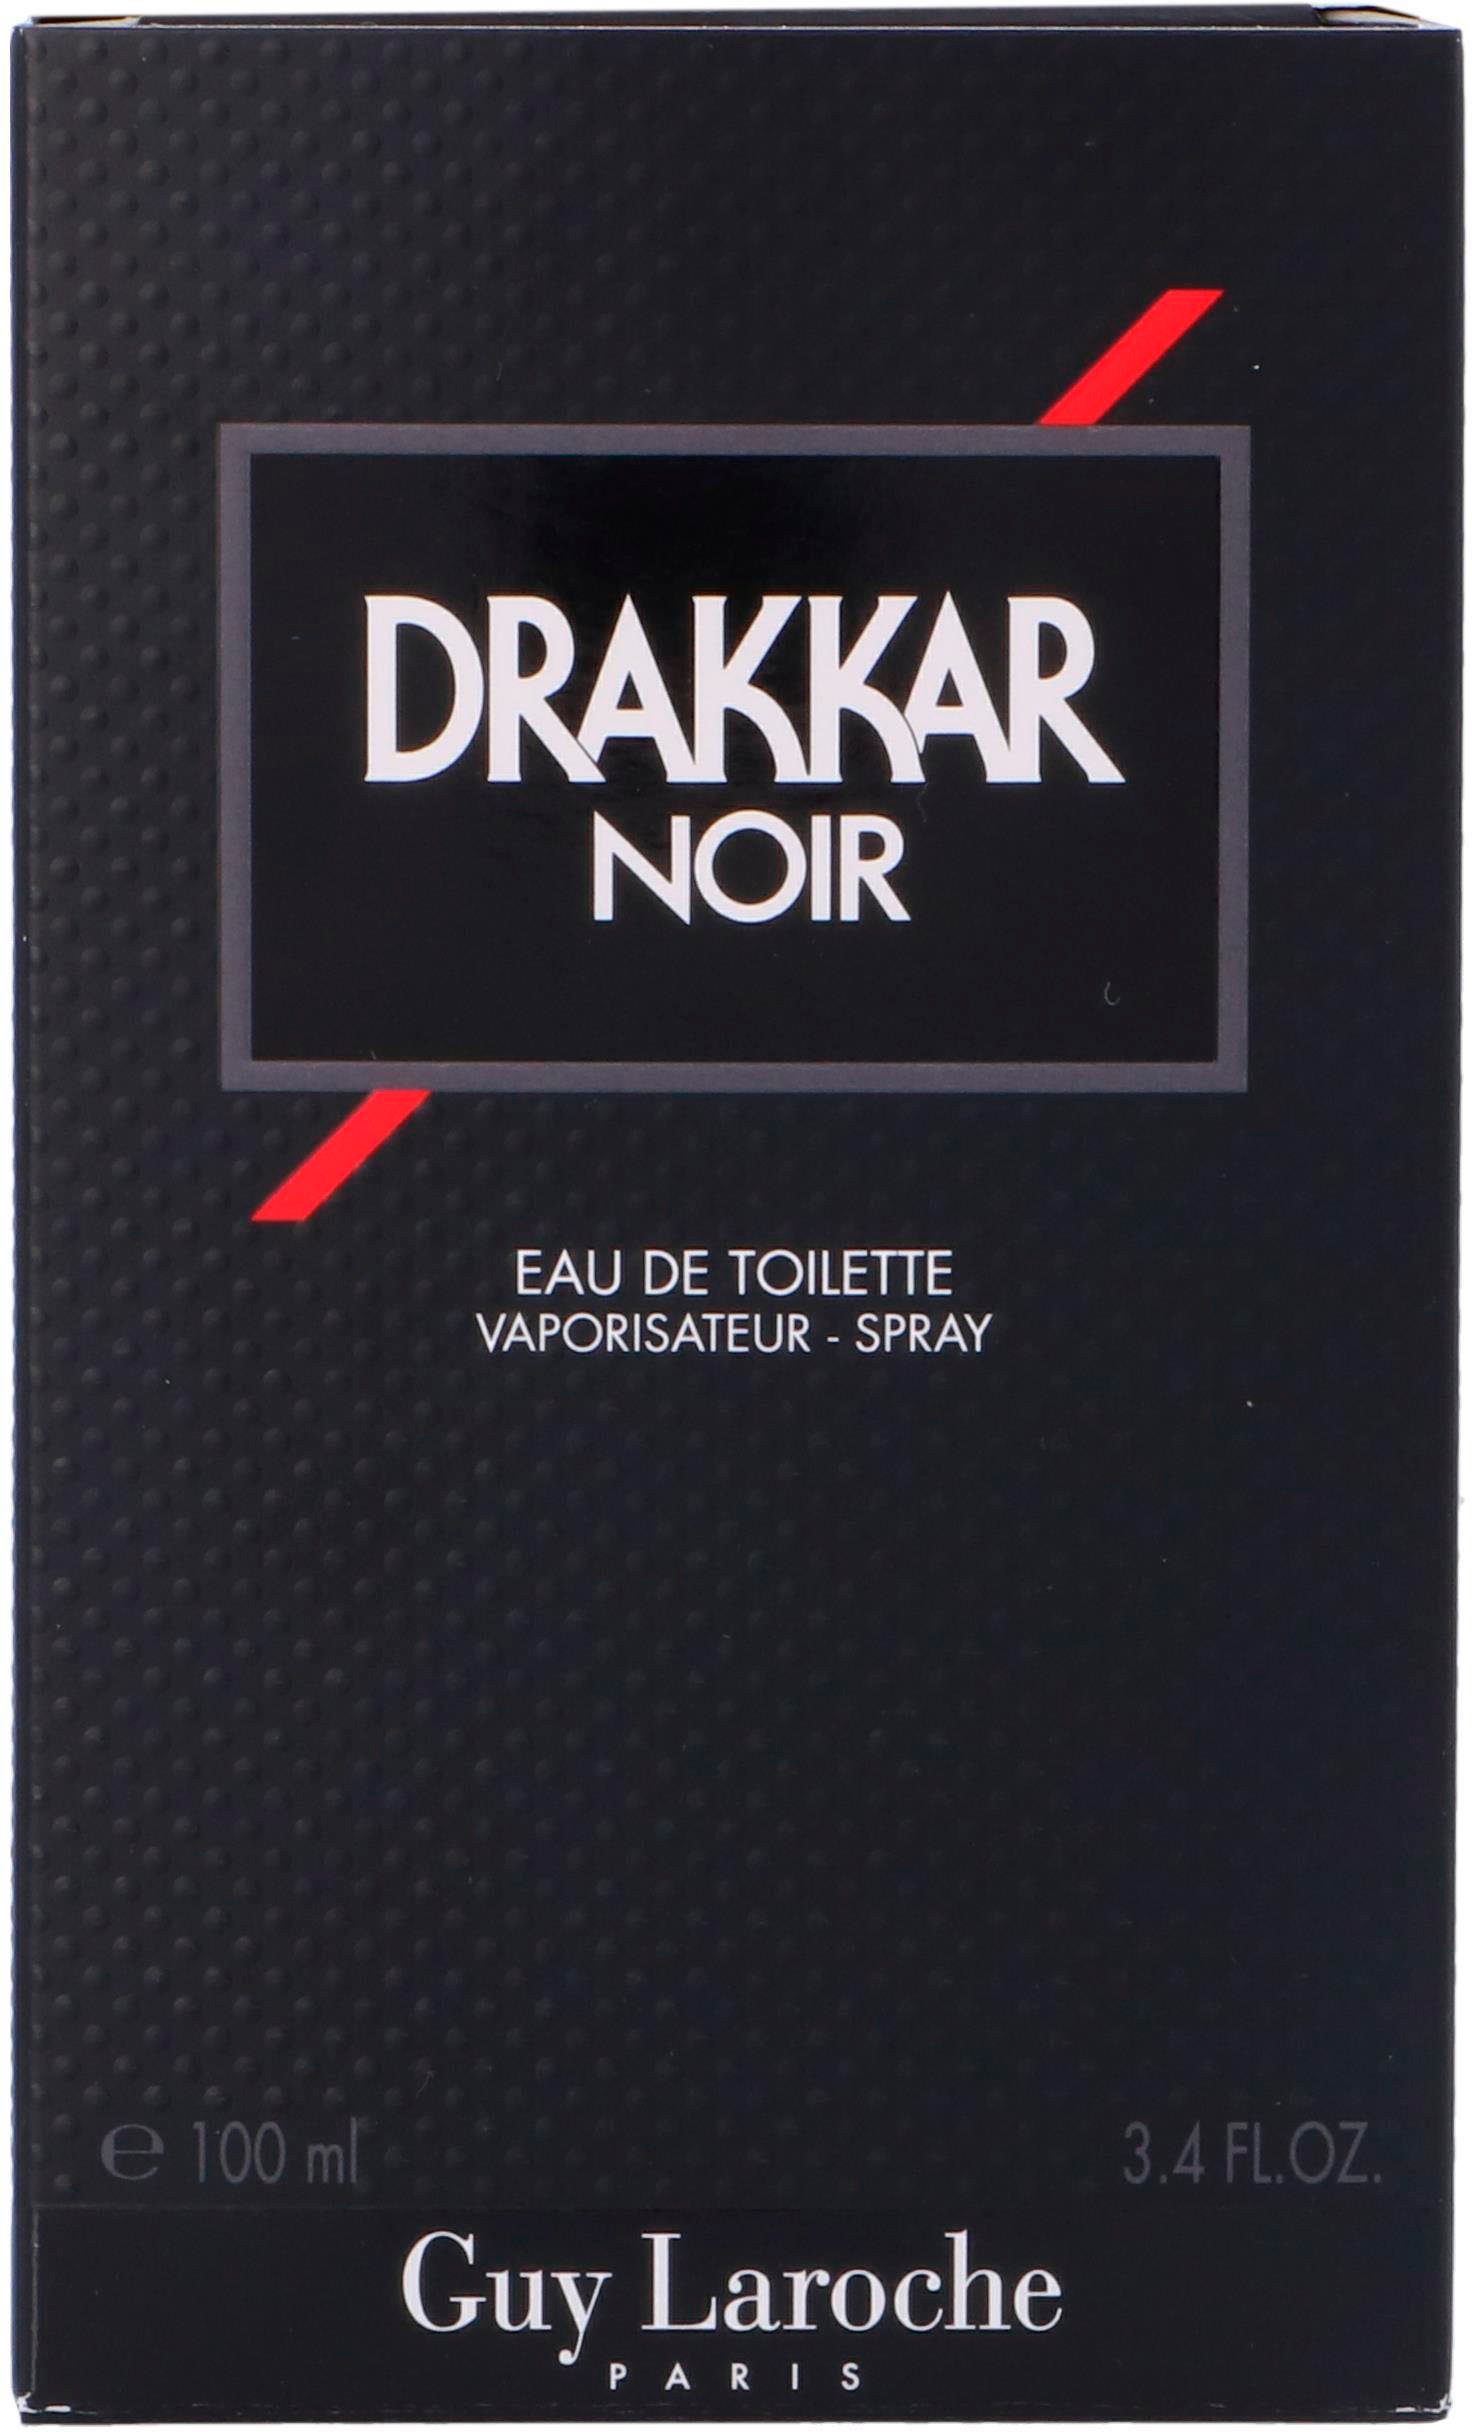 Noir de Eau Drakkar Guy Toilette Laroche